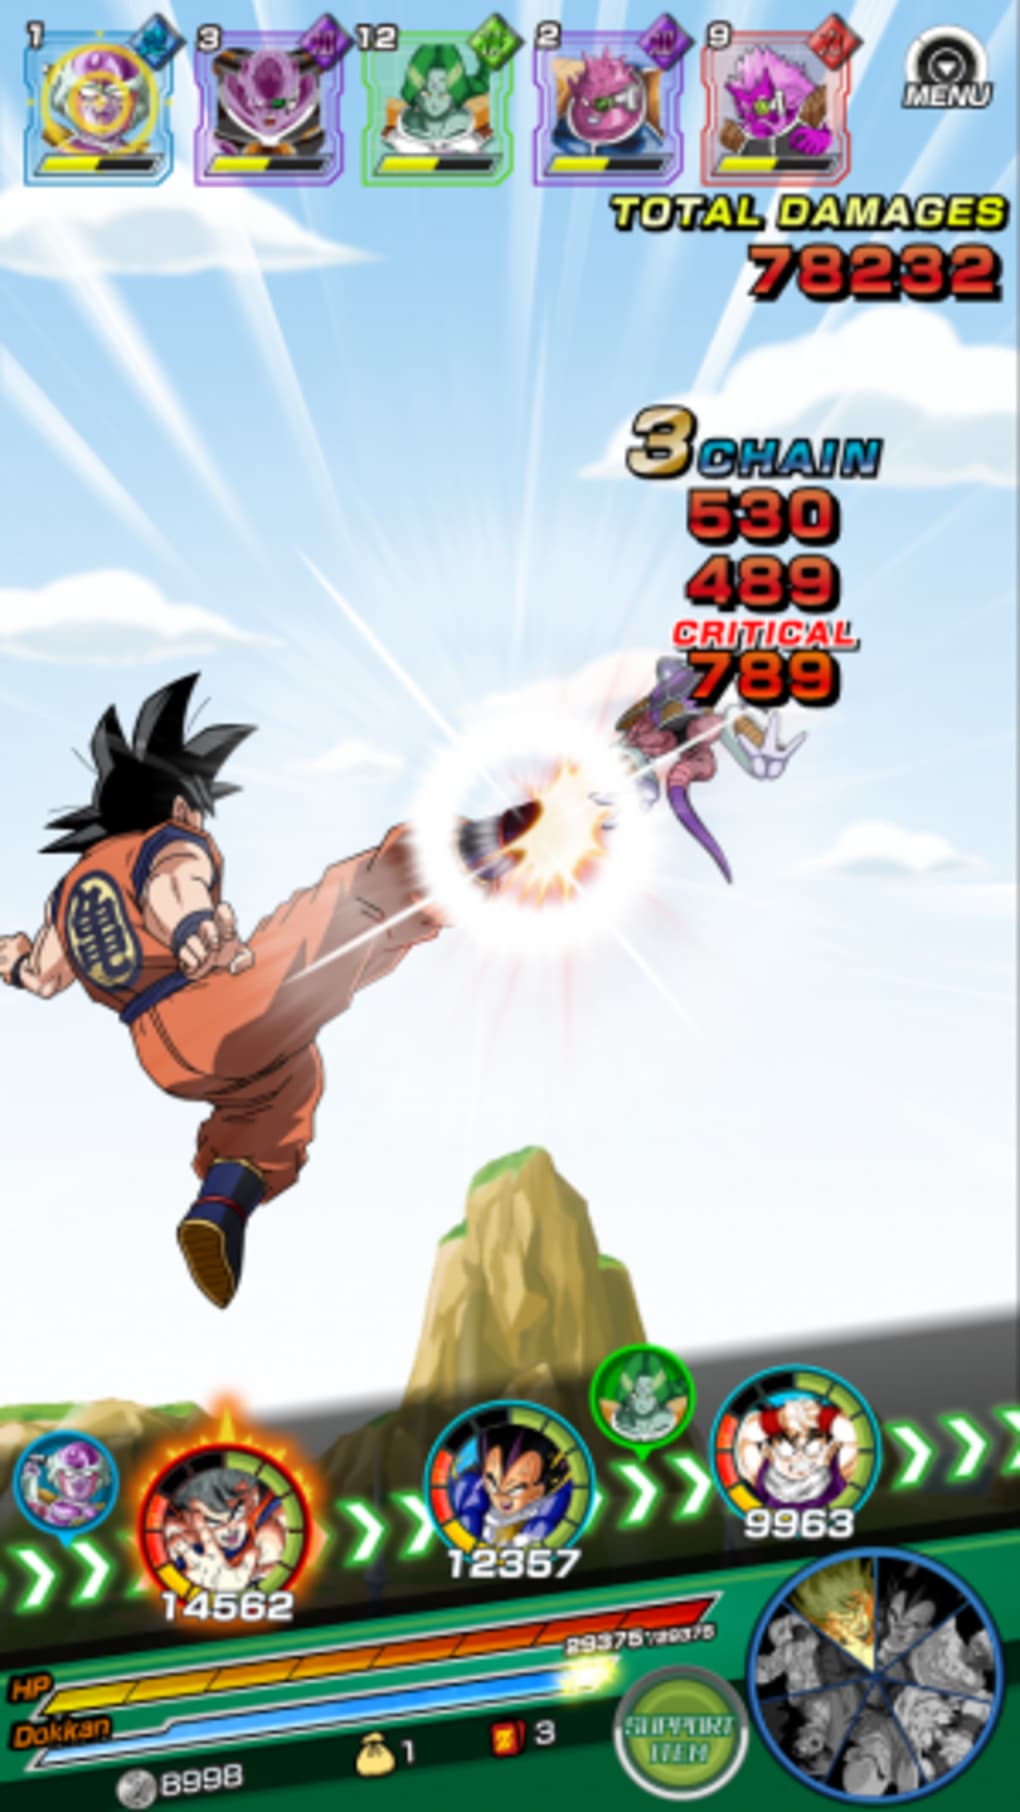 Dragon Ball Z Dokkan Battle 5.14 - Download for PC Free